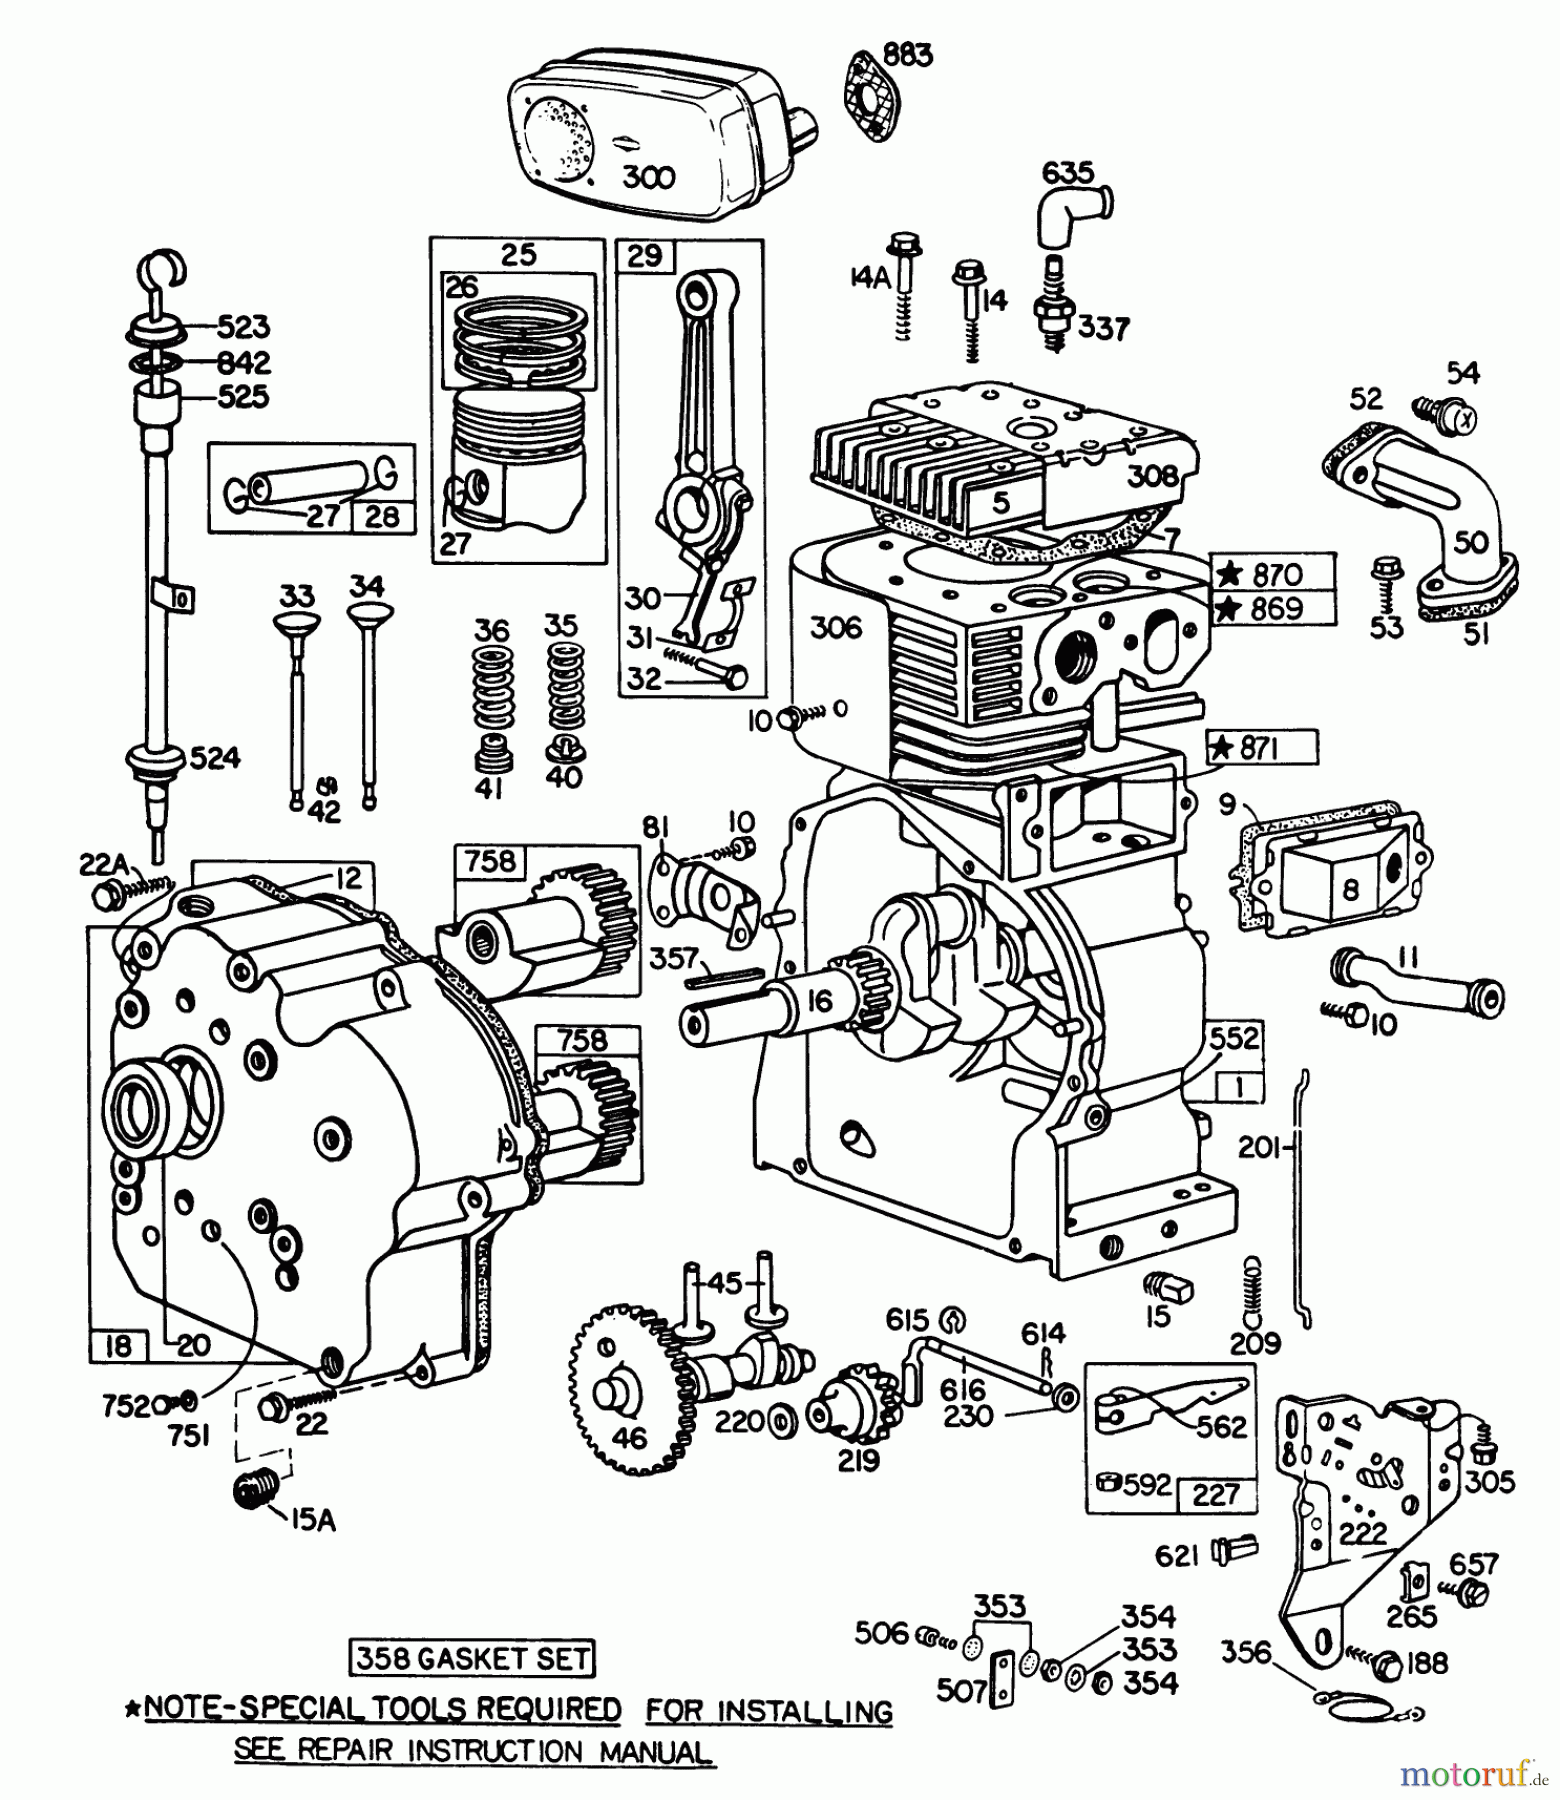  Toro Neu Snow Blowers/Snow Throwers Seite 1 38160 (1132) - Toro 1132 Snowthrower, 1983 (3000001-3999999) ENGINE BRIGGS & STRATTON MODEL NO. 252416-0190-01 #1